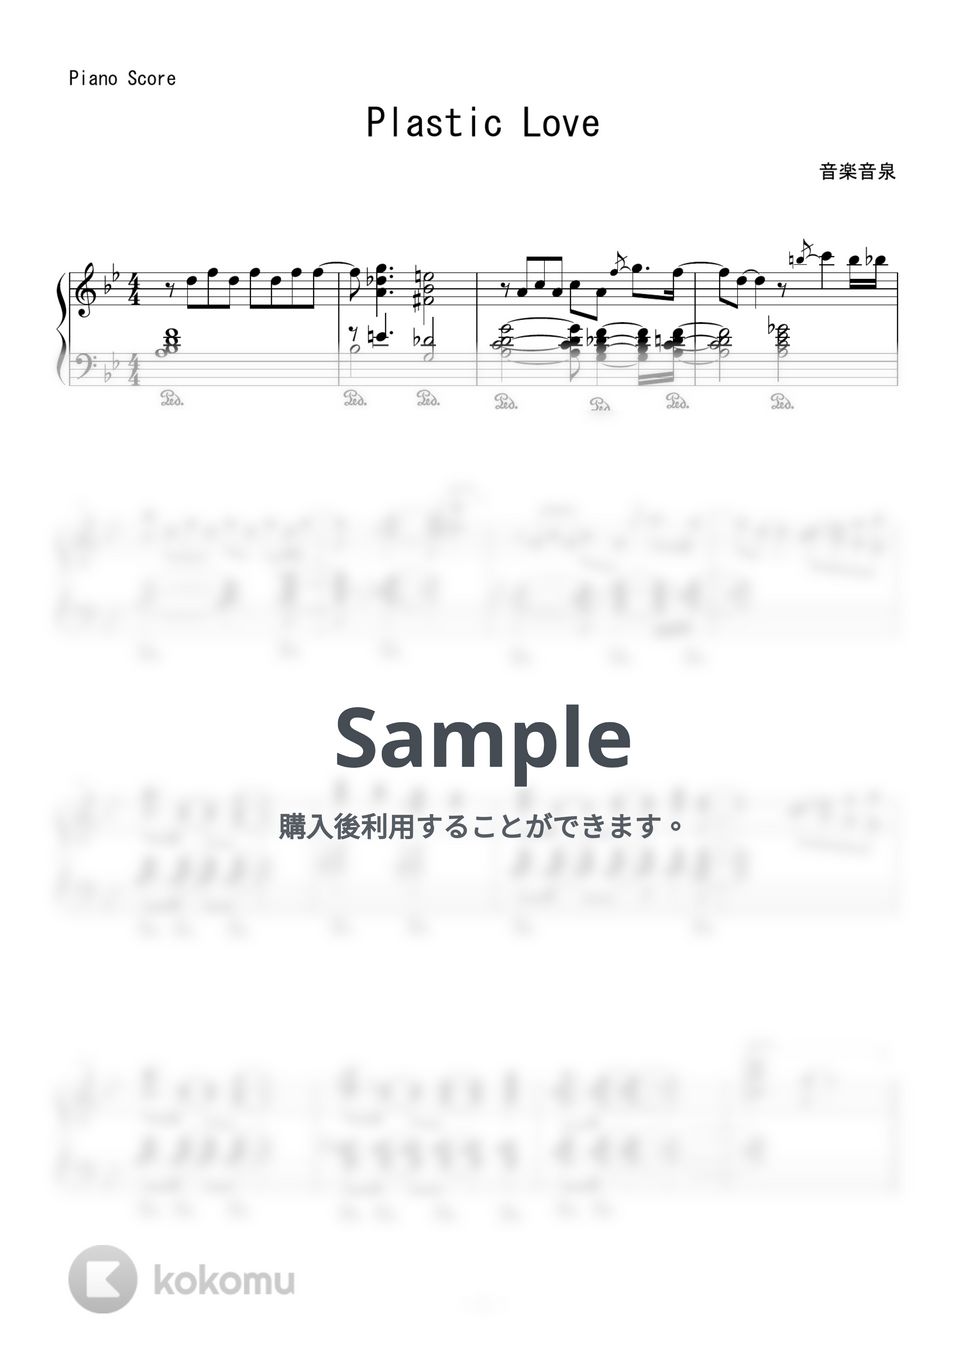 竹内 まりや - プラスティック・ラブ (ピアノトリオ - ジャズアレンジ) by 音楽音泉